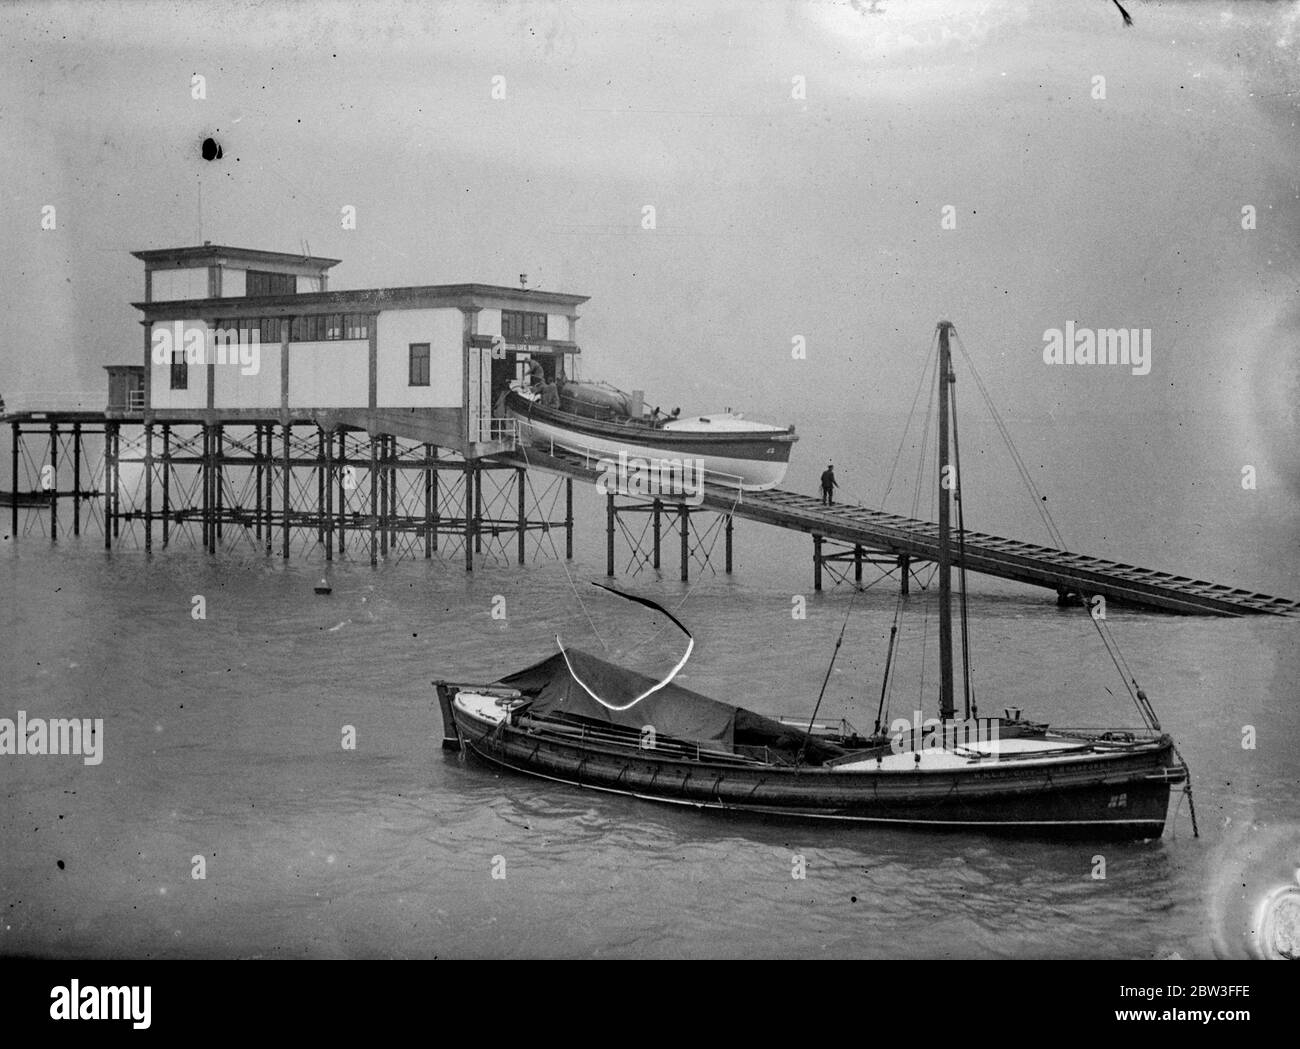 La nuova pista di salvataggio di Southend è stata testata per la prima volta . Spettacoli fotografici ; lancio della grande imbarcazione di Southend . 25 gennaio 1935 Foto Stock